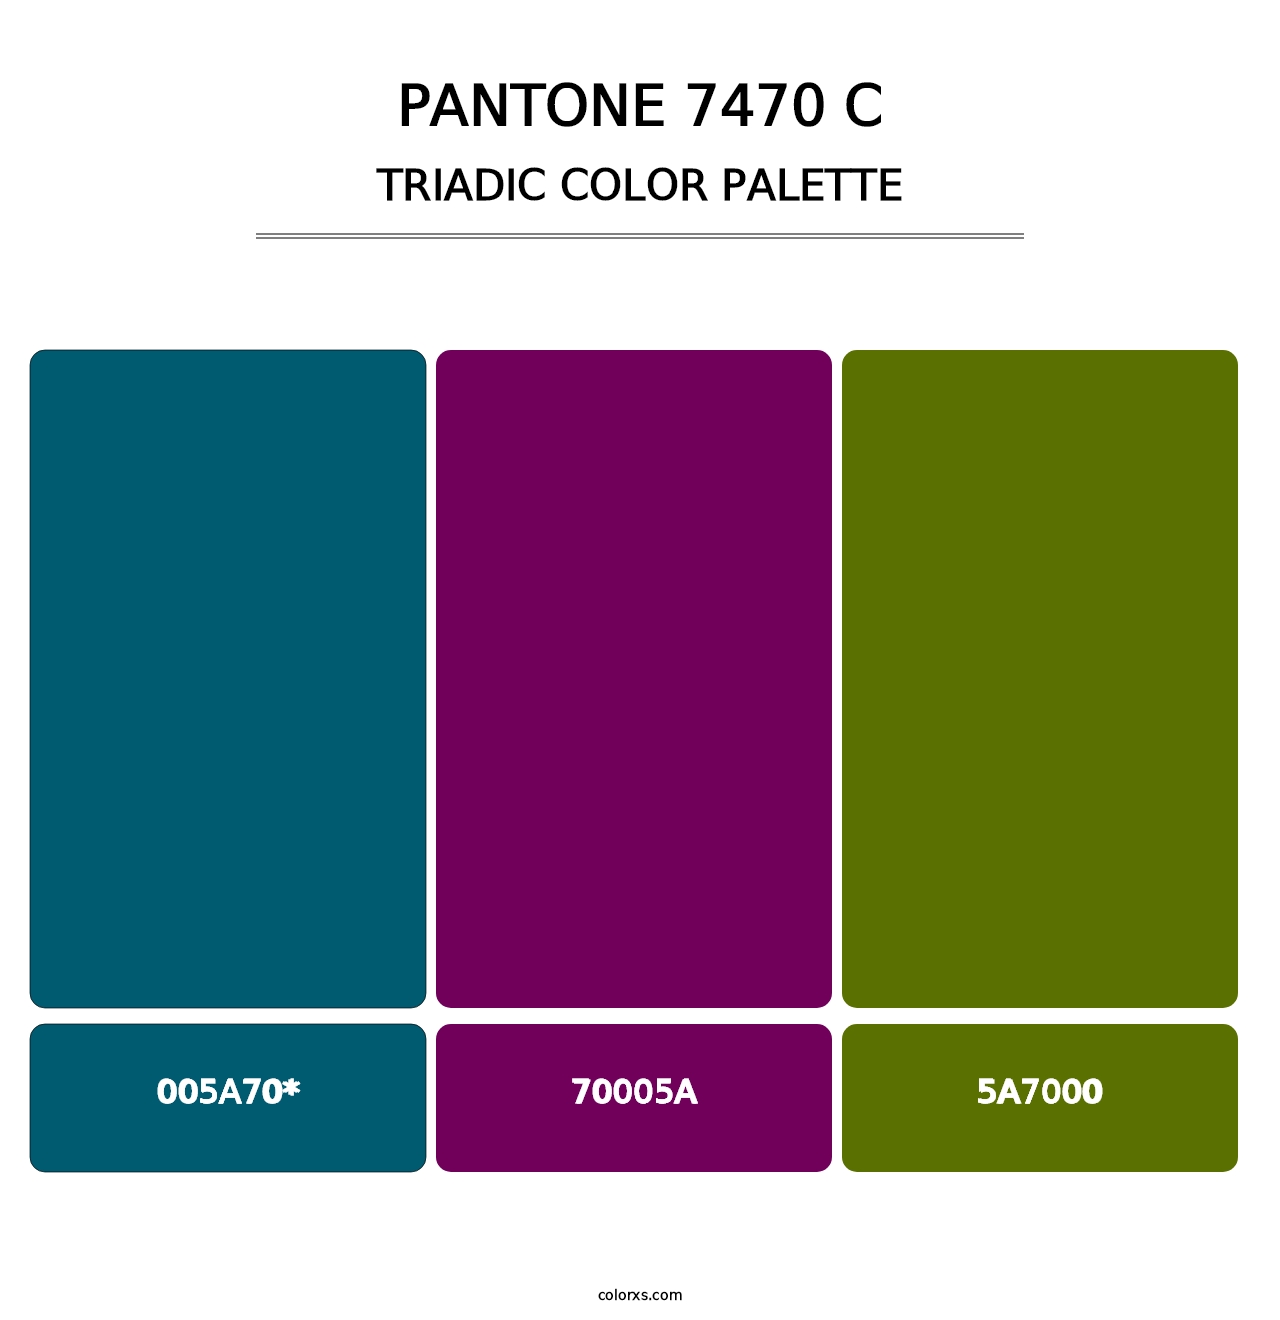 PANTONE 7470 C - Triadic Color Palette